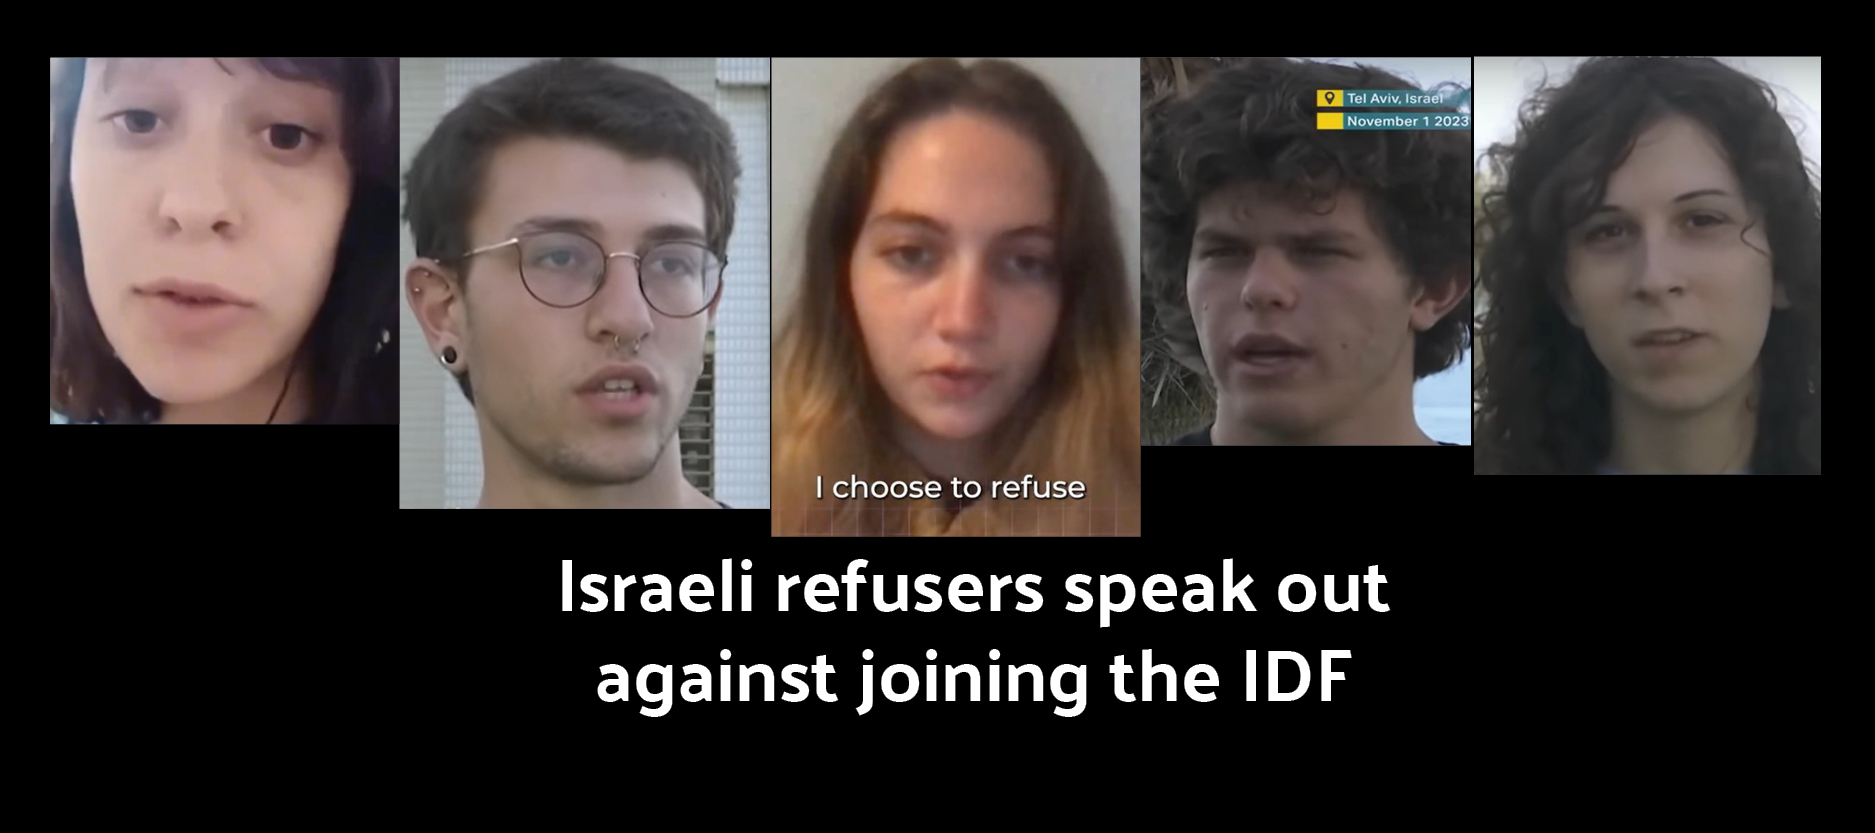 Israeli refusers